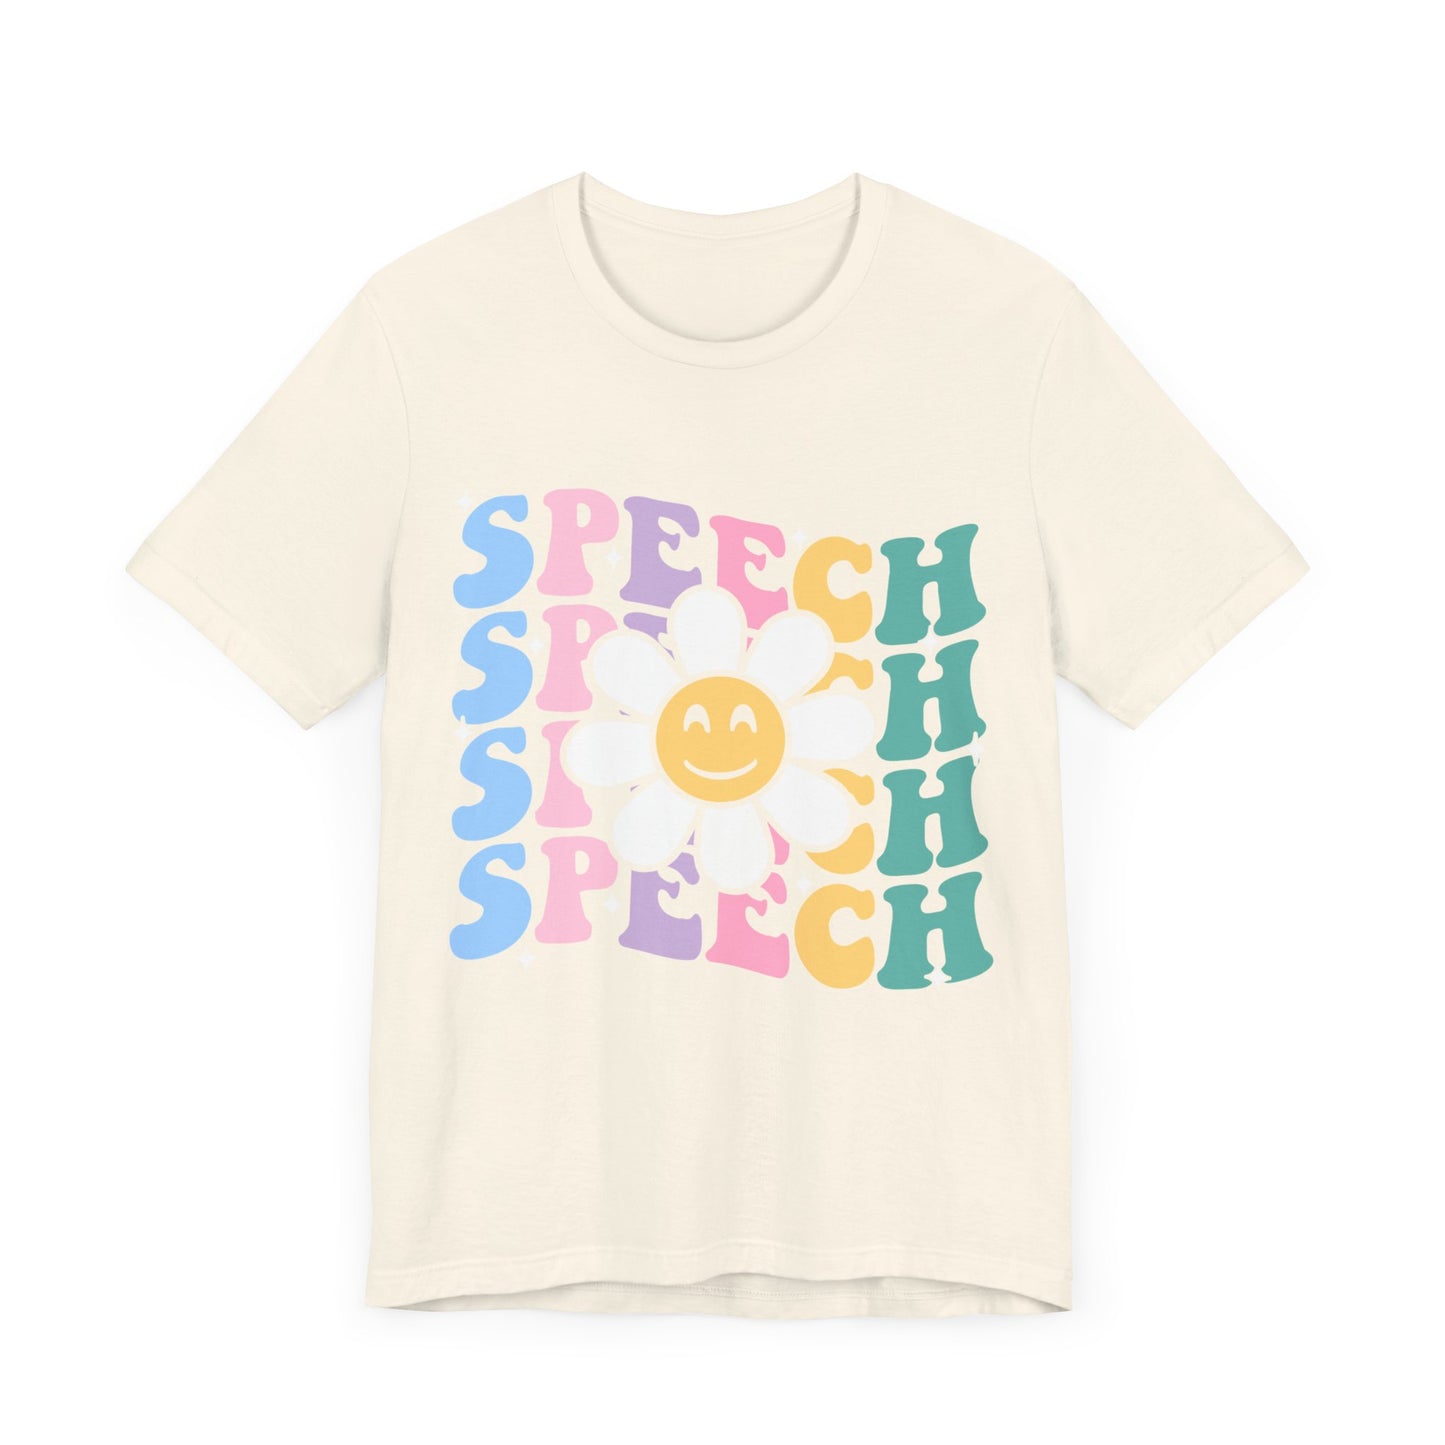 Speech Therapy Shirt, SLP Shirt, Therapist Shirt, Pathologist Shirt, Speech Therapist